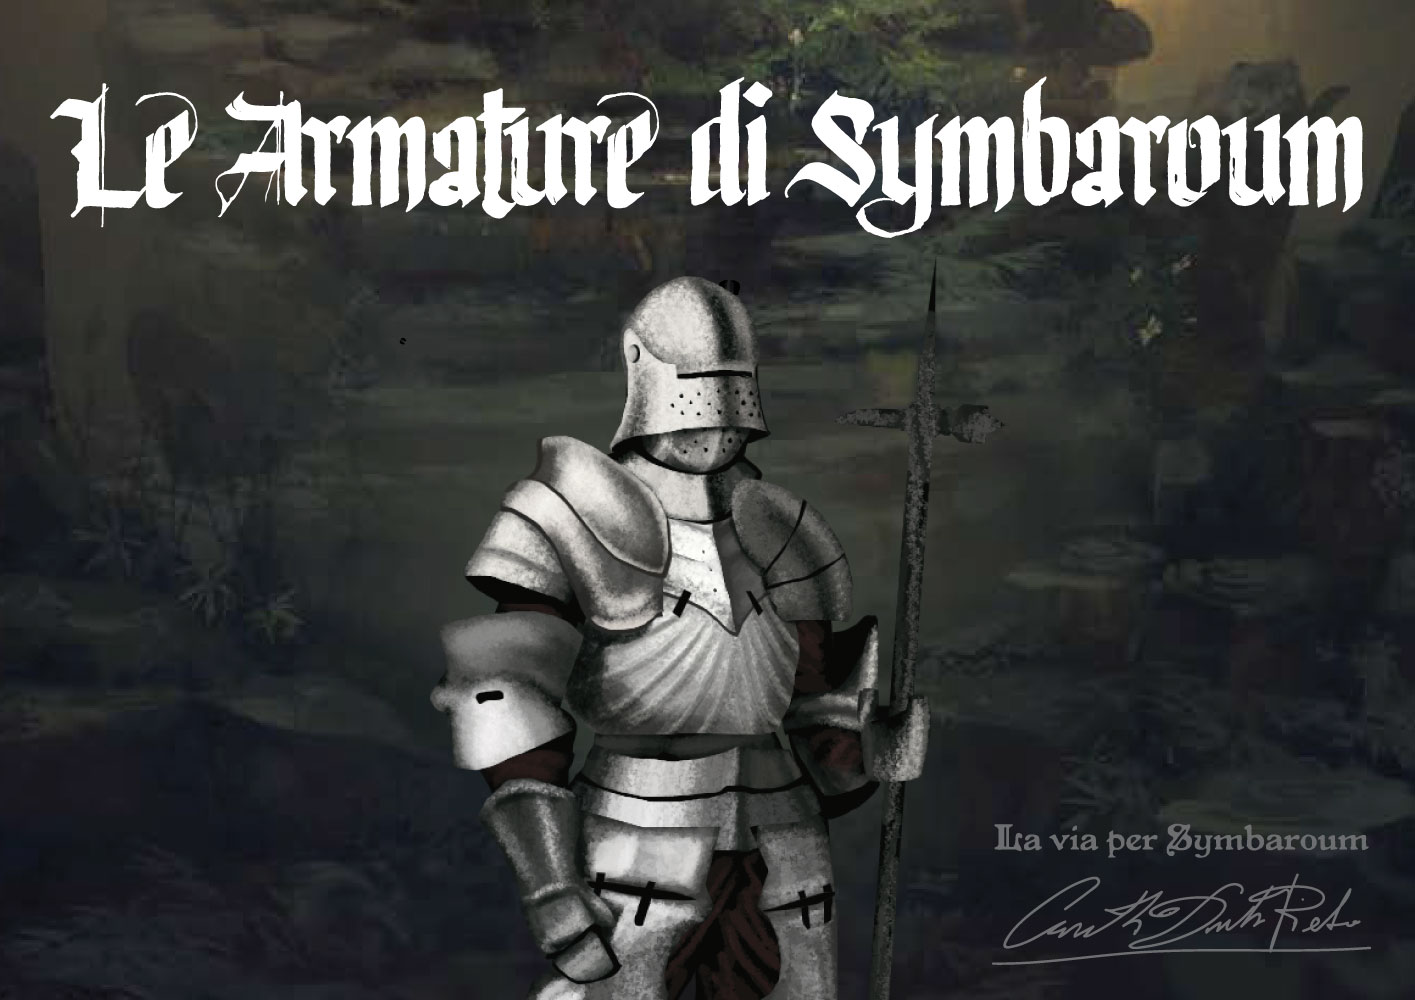 Immagini di armature medievali del gioco di ruolo symbaroum